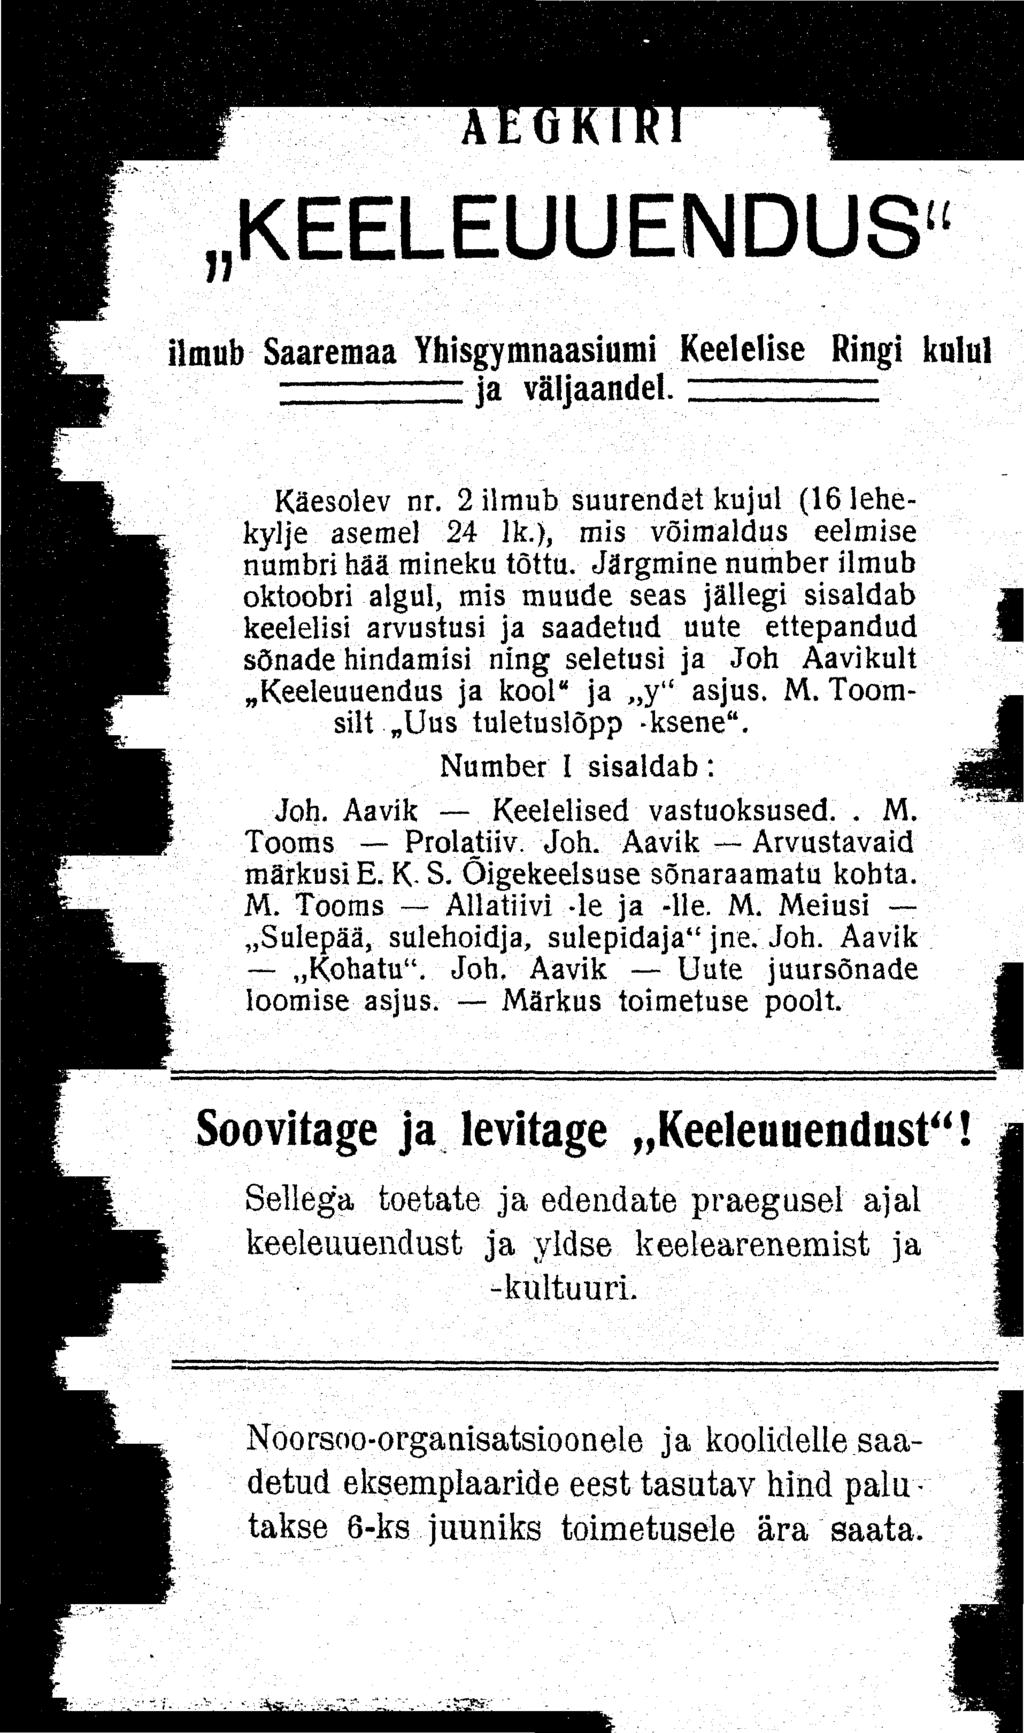 JJ KEELEUUENDUS u ilmub Saaremaa Yhisgymnaasiumi Keelelise Ringi kulul ja väljaandel. Käesolev nr. 2 ilmub suurendet kujul (161ehekylje asemel 24 lk.), mis võimaldus eelmise numbri hää mineku tõttu.